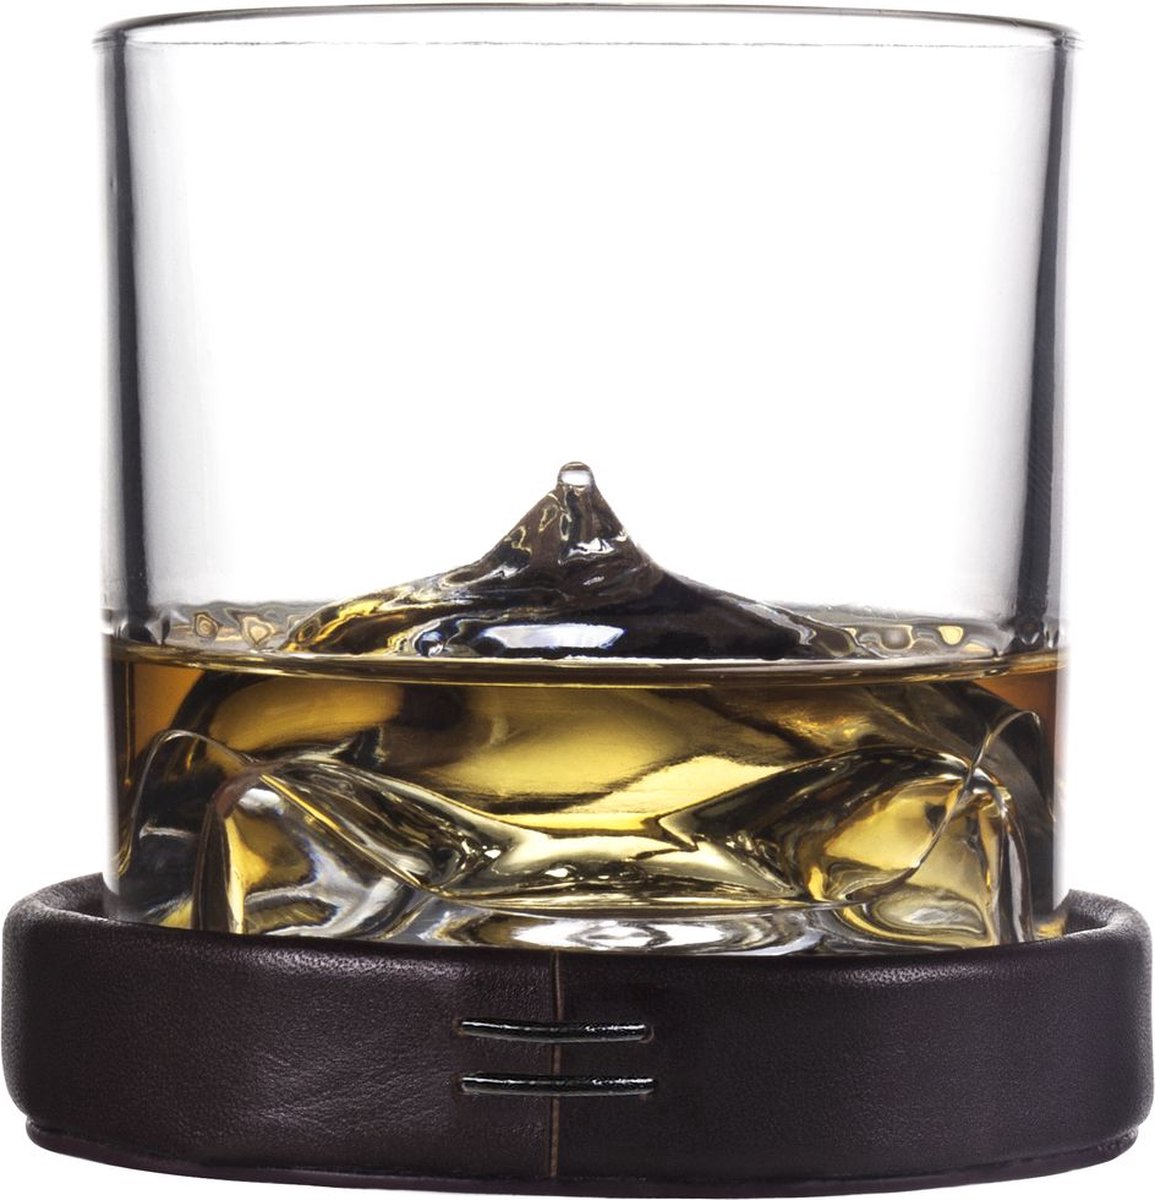 Liiton - Karaf, Dienblad, 6 Onderzetters en 6 Glazen met Koelsysteem Everest Set van 14 Stuks - Glas - Transparant